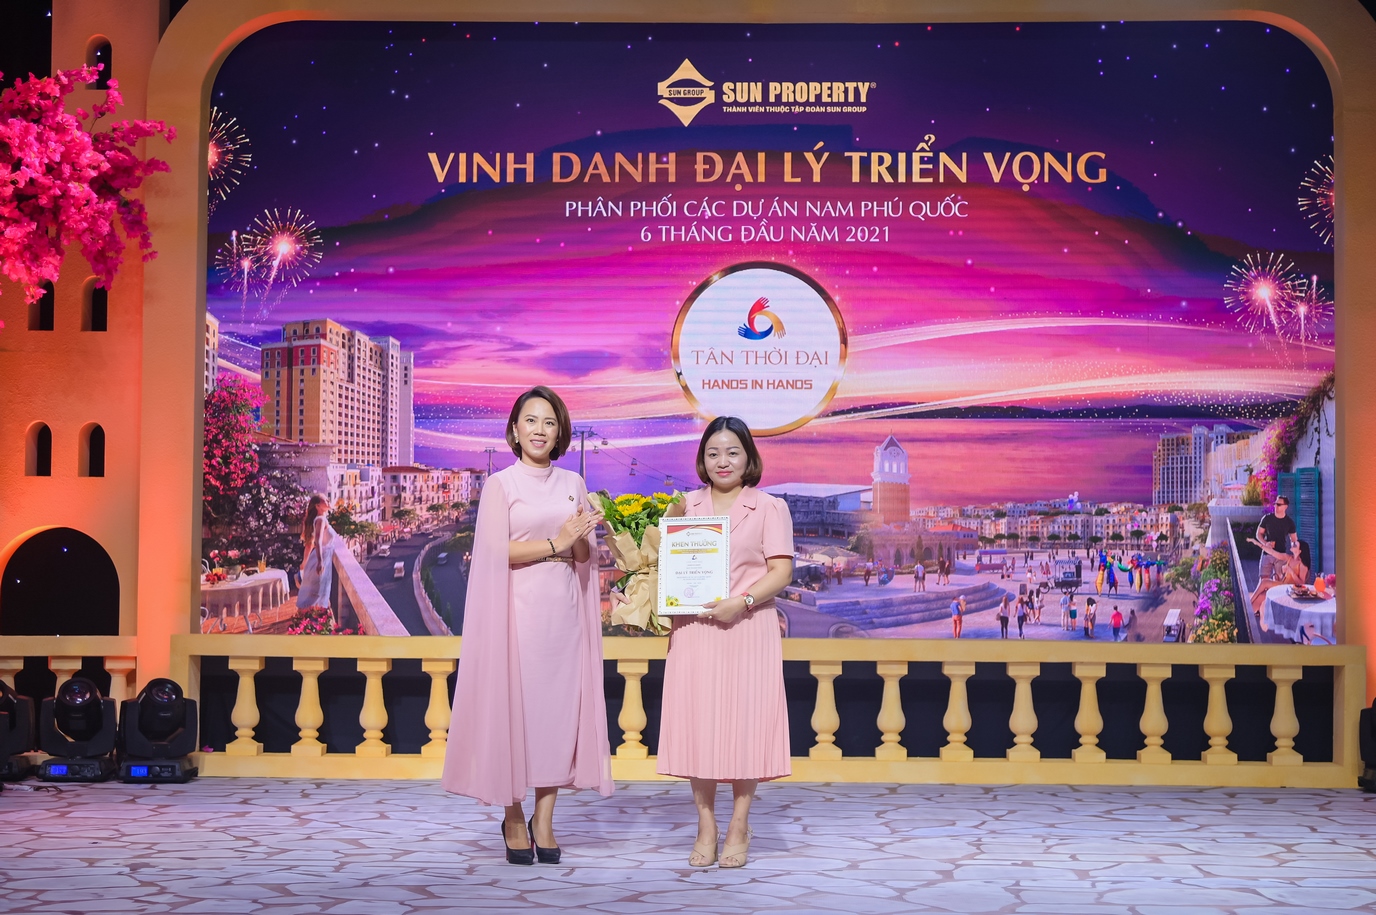 Bà Nguyễn Ngọc Thúy Linh - Phó tổng giám đốc Sun Property (giữa) đại diện Sun Group vinh danh đại lý triển vọng. Ảnh: Sun Group.